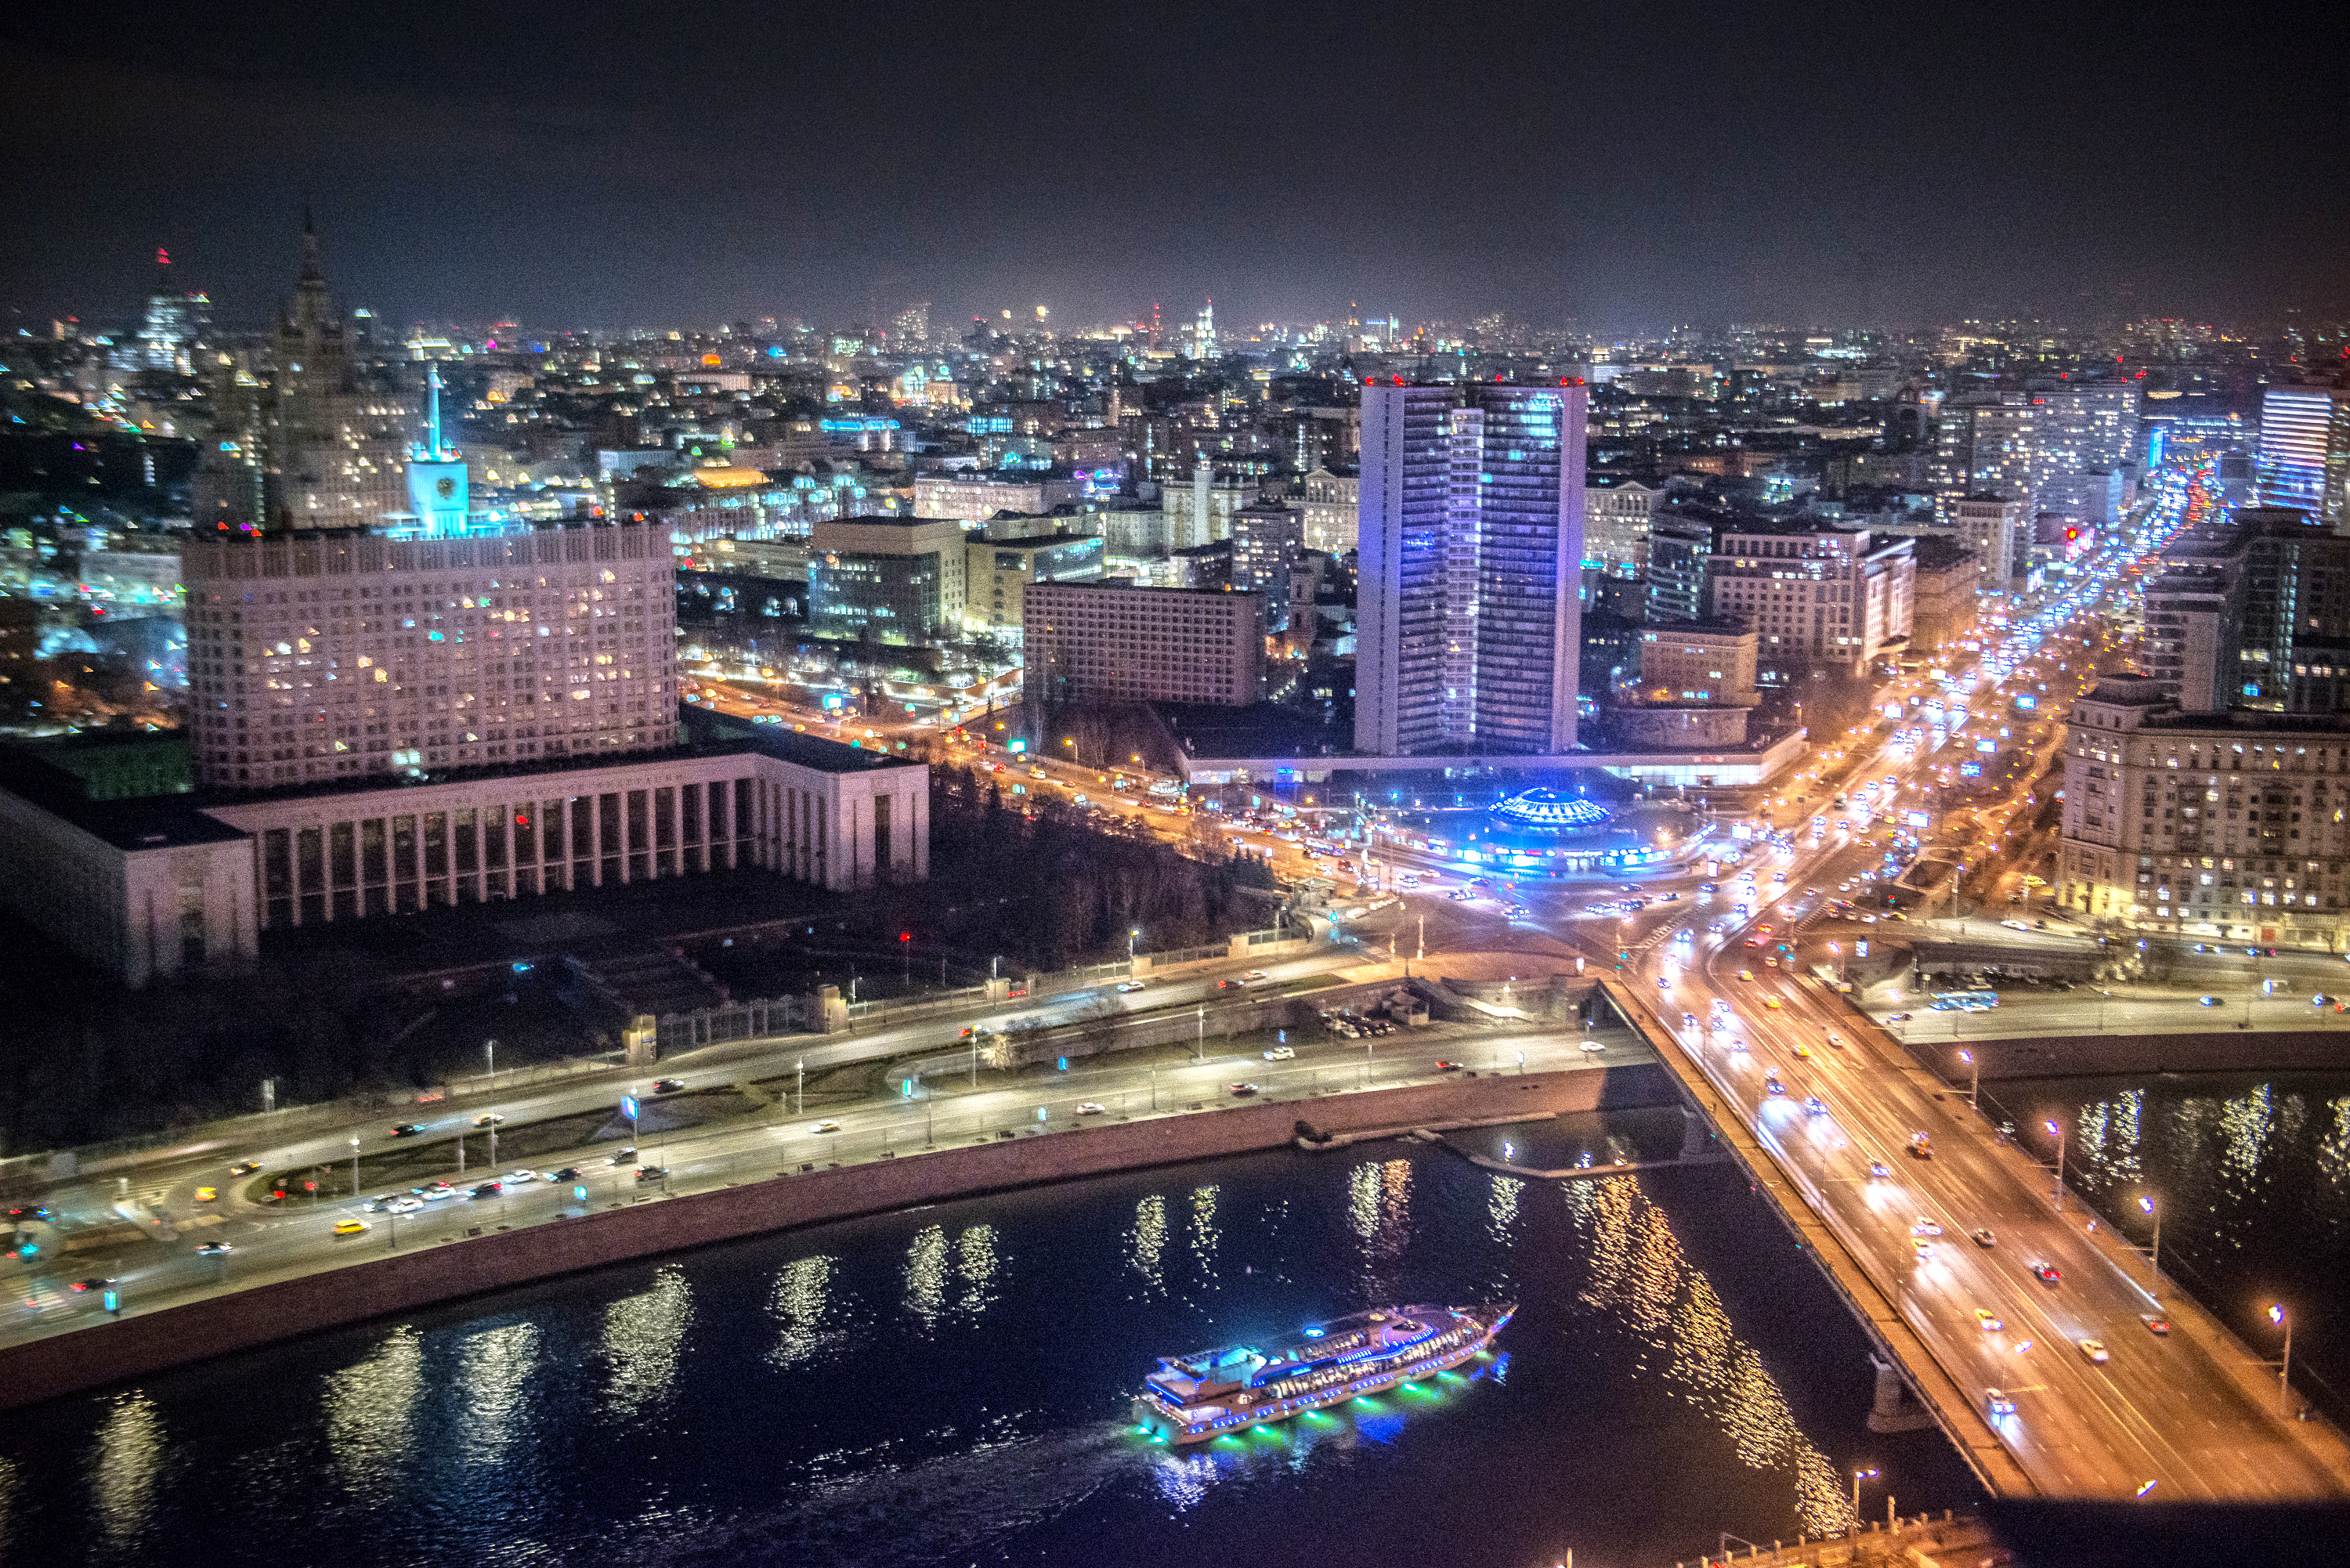 Москва вошла в пятерку лучших городов мира в рейтинге The World‘s 100 Best Cities